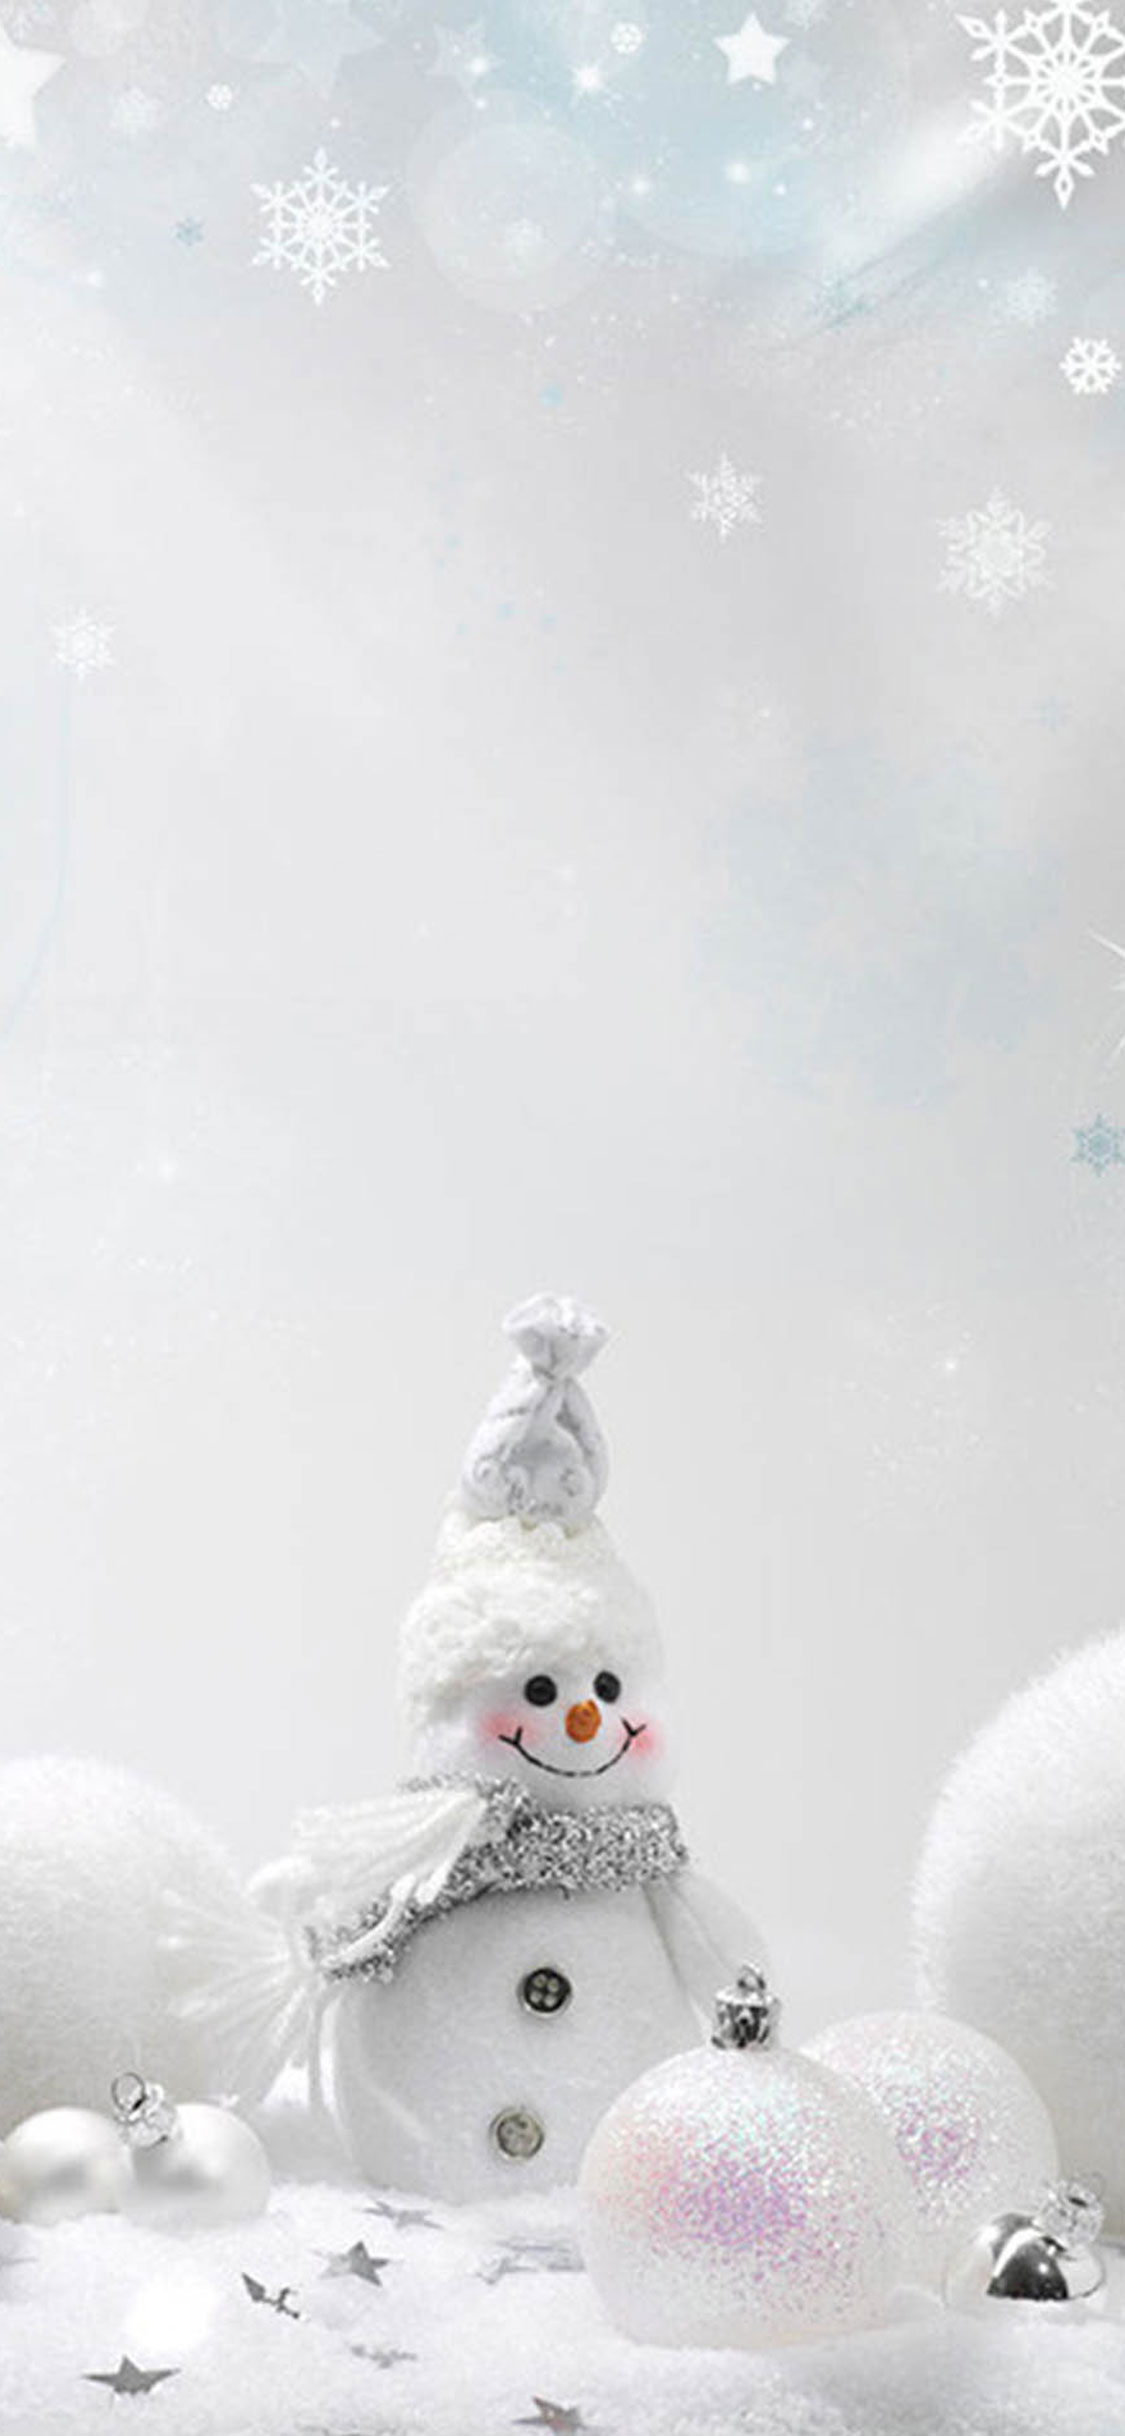 Bílý sněhulák.jpg